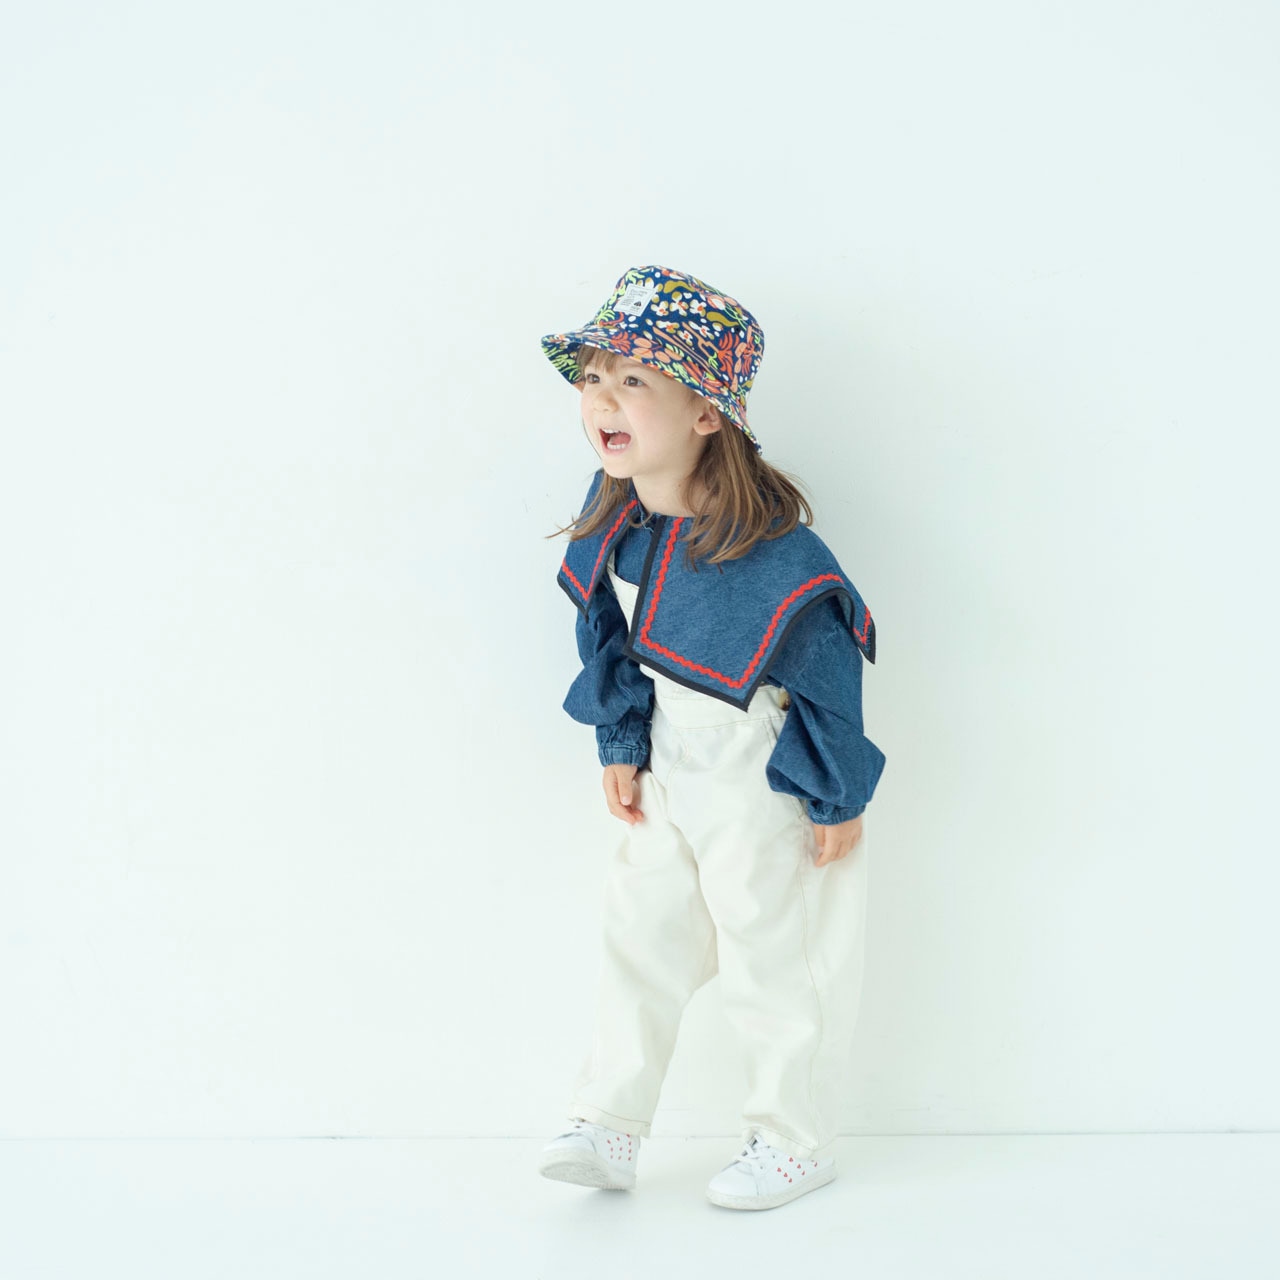 バケットハット【ネイビー】54cm ブランド 子供帽子  ベビー帽子 キッズハット キッズキャップ 紫外線対策 日本製 出産祝い